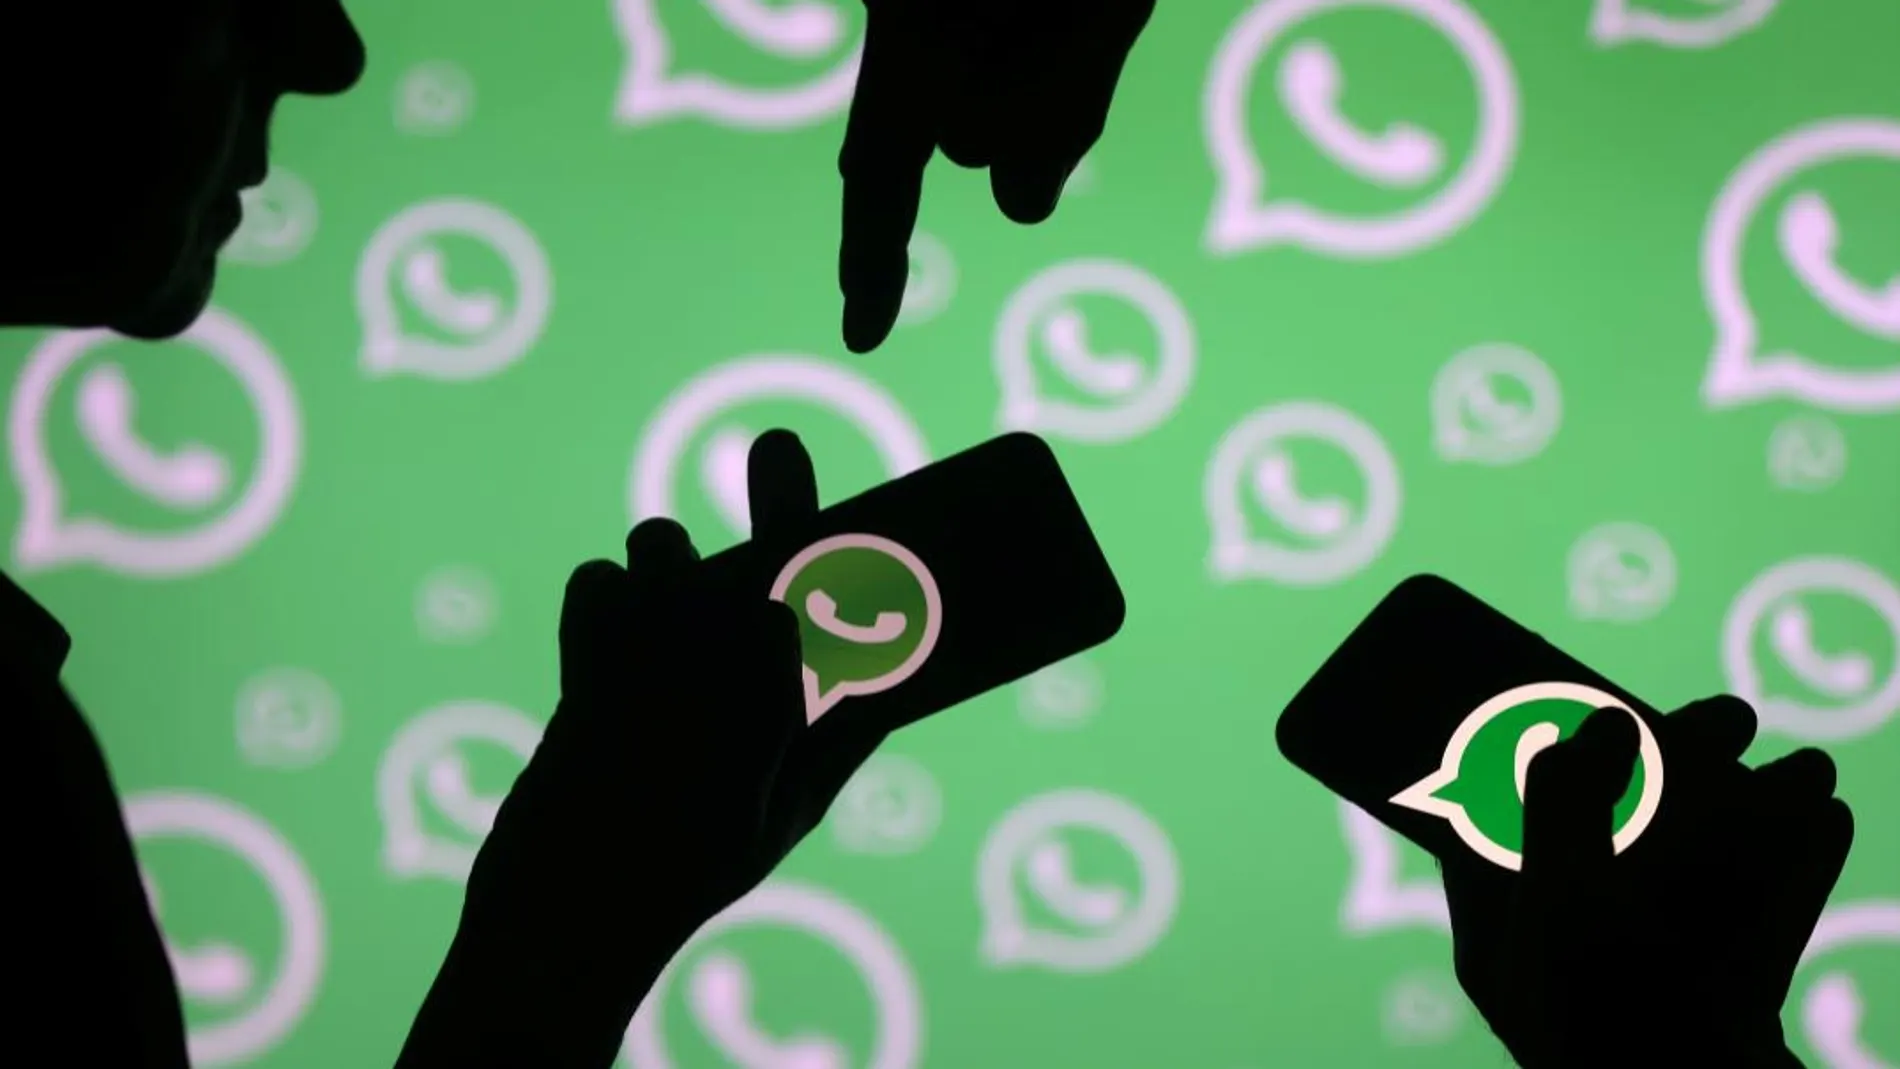 Incluir teléfonos en grupos de WhatsApp sin permiso es ilegal